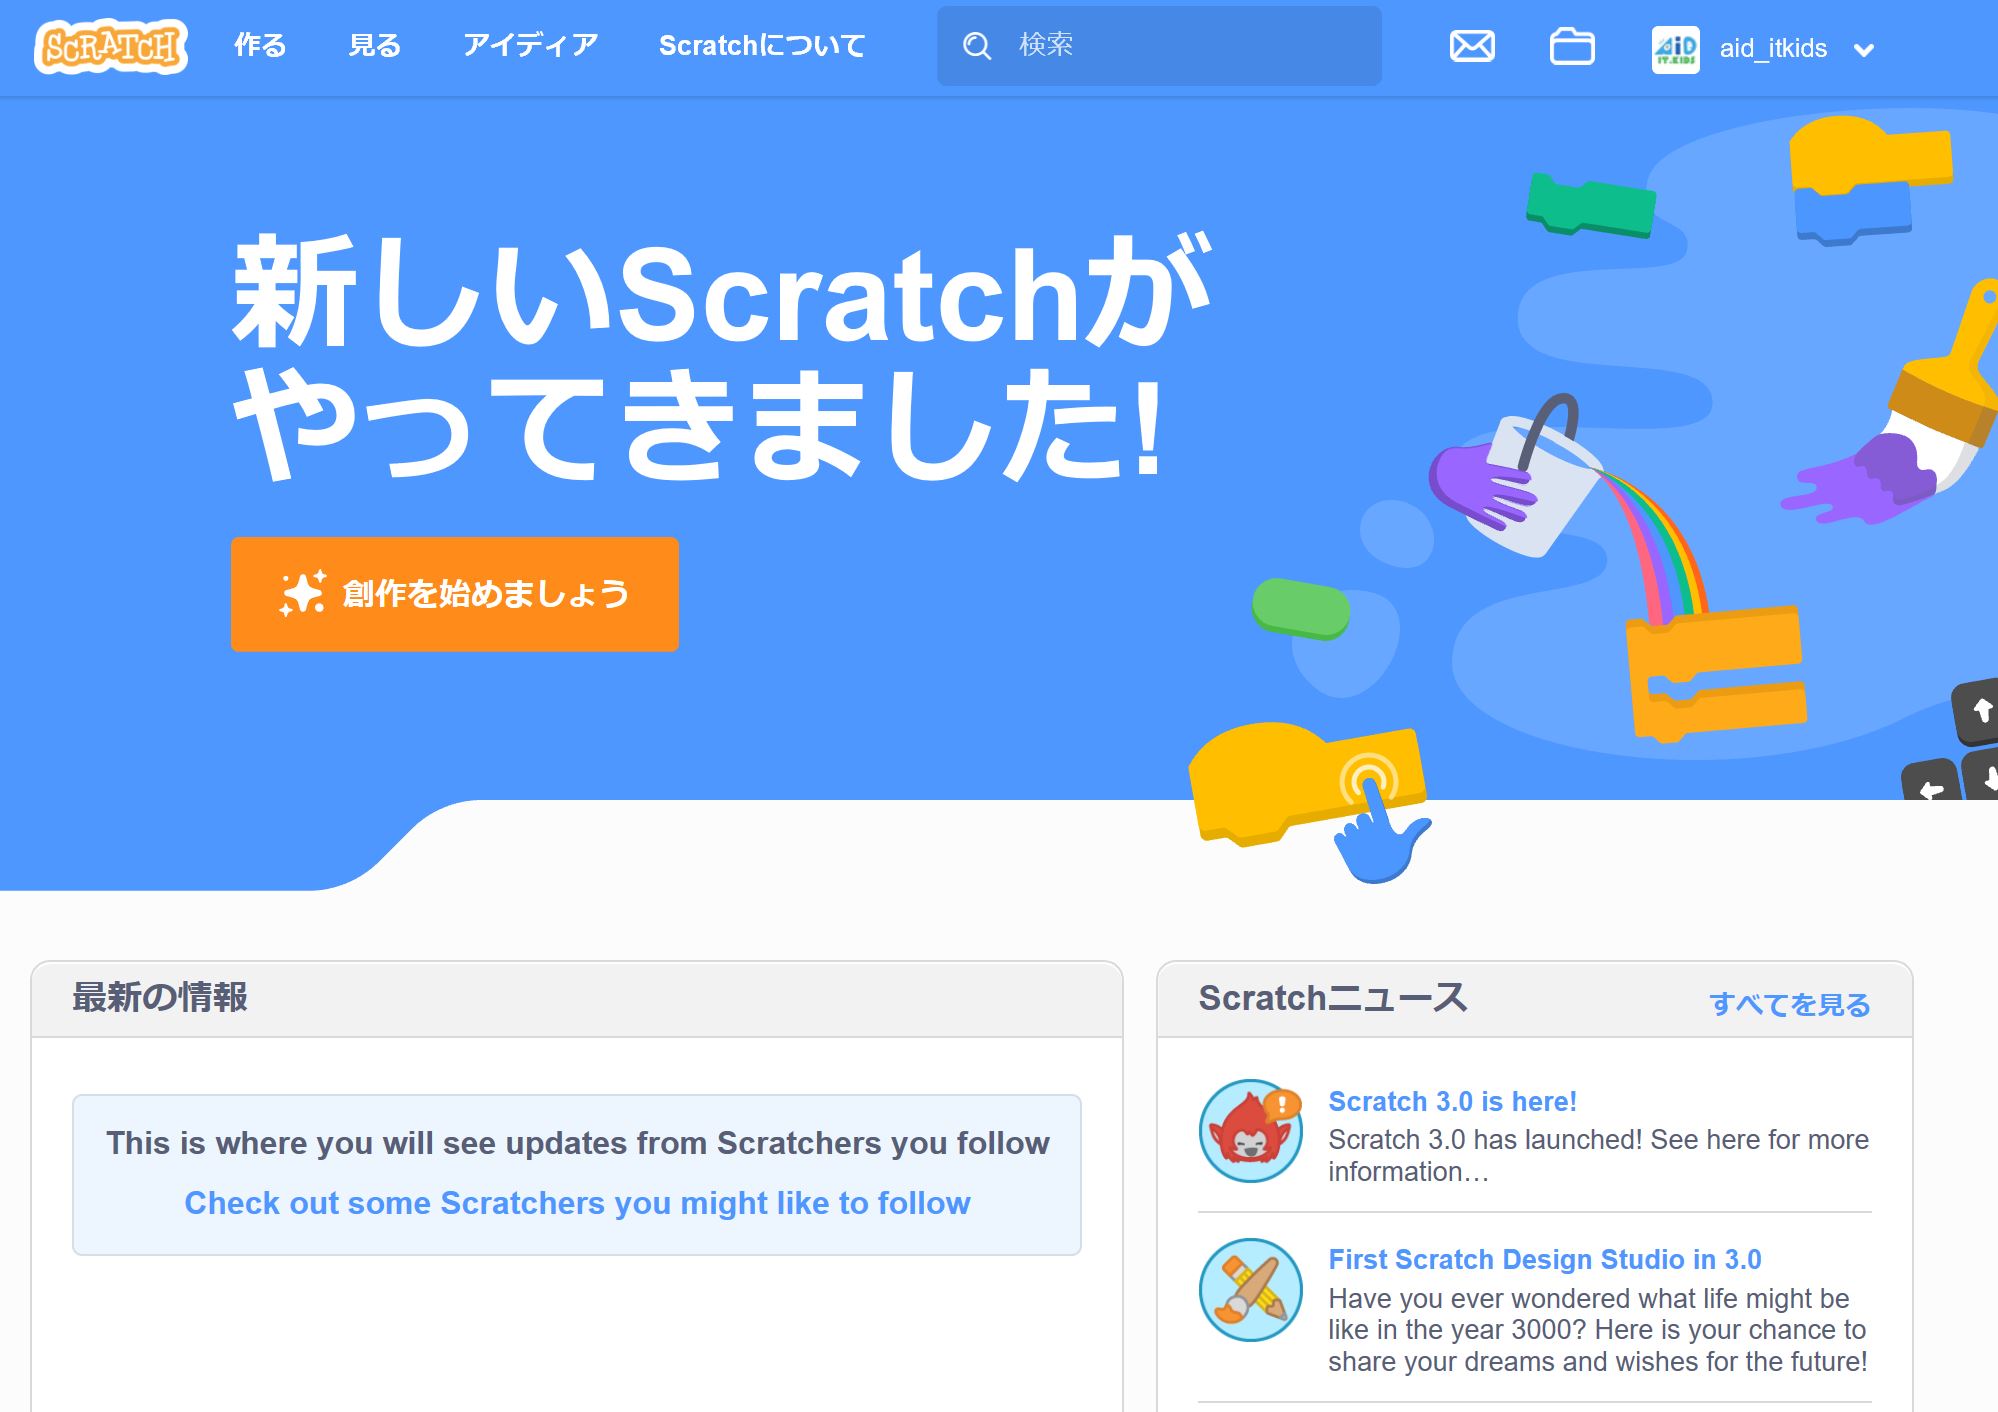 Scratch（スクラッチ）が3.0にパワーアップして楽しさが増している。